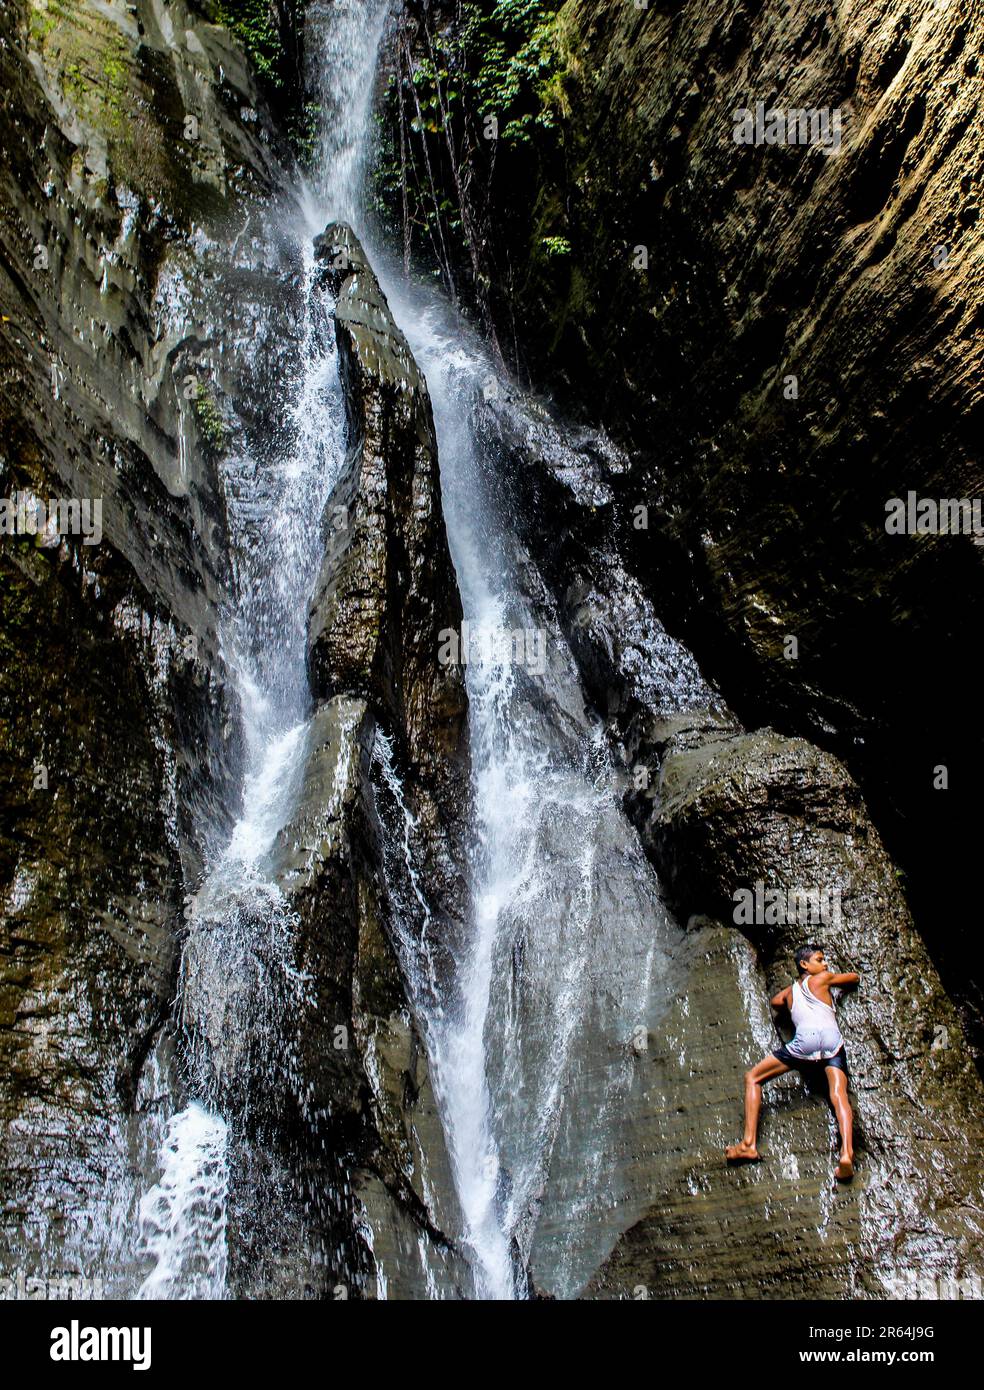 Spiderman puntato. Un ragazzo sale su una collina con una bella cascata. Foto Stock